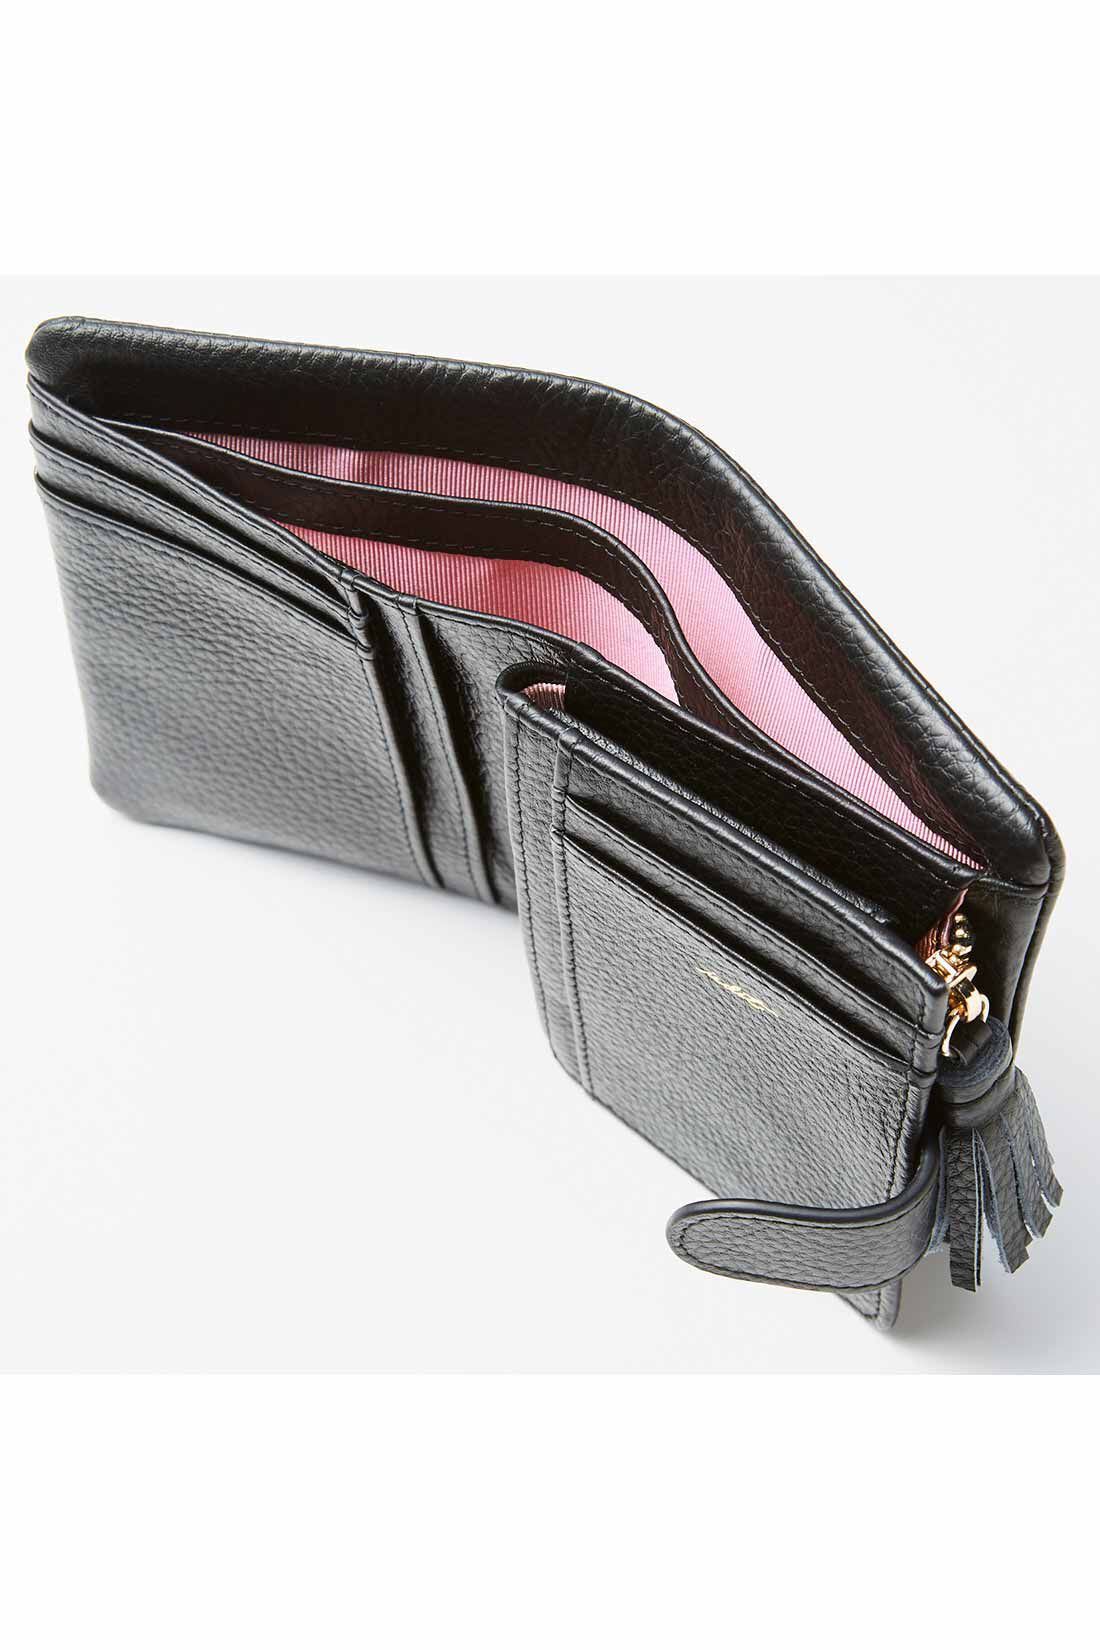 イディット|IEDIT[イディット]　くったり本革素材できれいめ二つ折り財布〈ブラック〉|2部屋に分かれたお札入れは、レシートの整理にも。